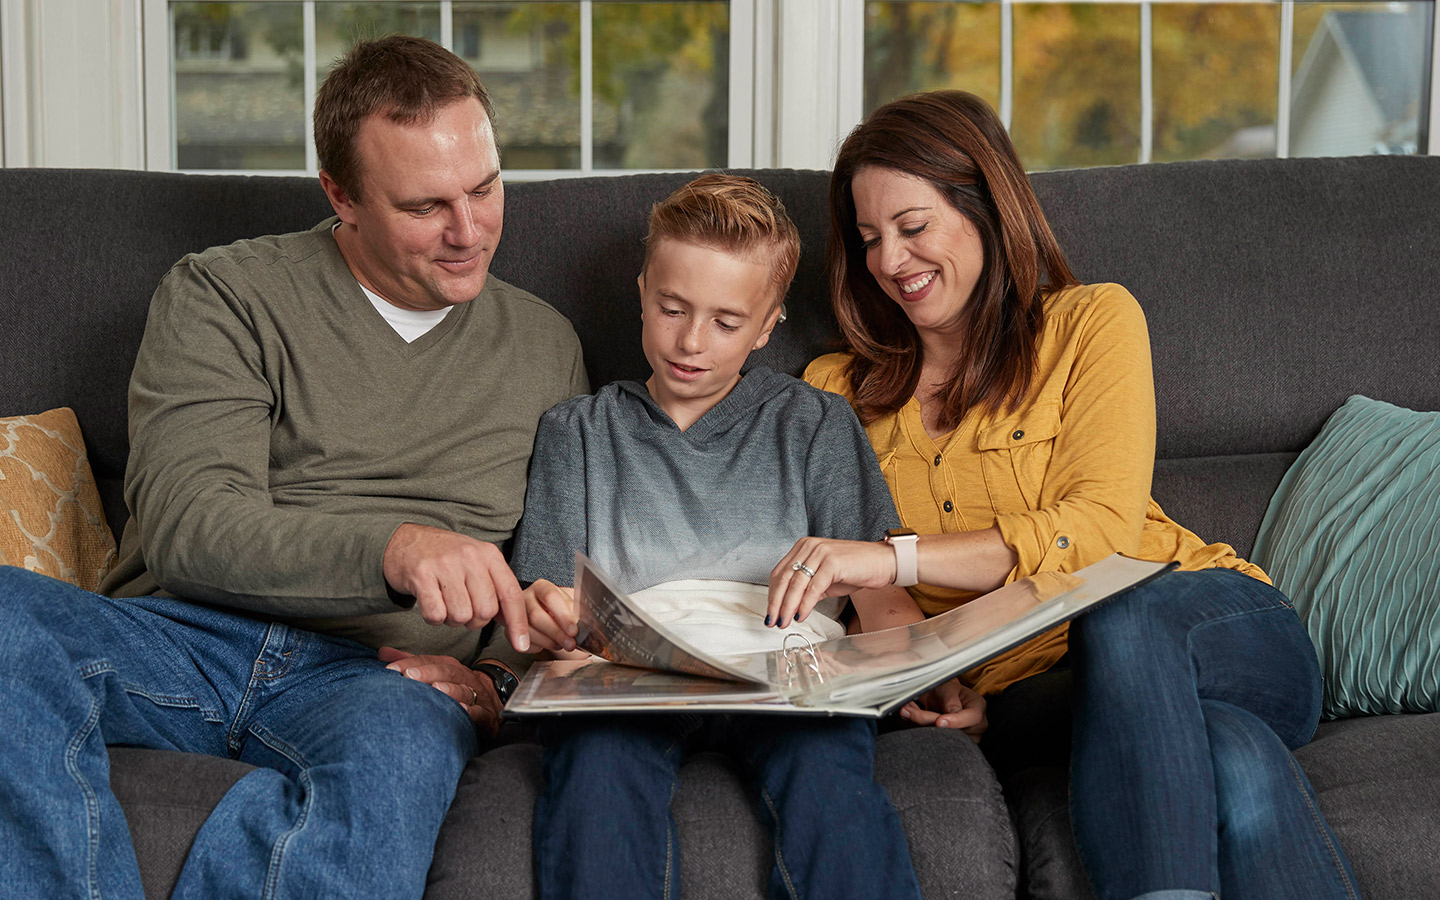 Padres sentados en un sofá con su hijo, que usa un implante de Cochlear, lo escuchan leer